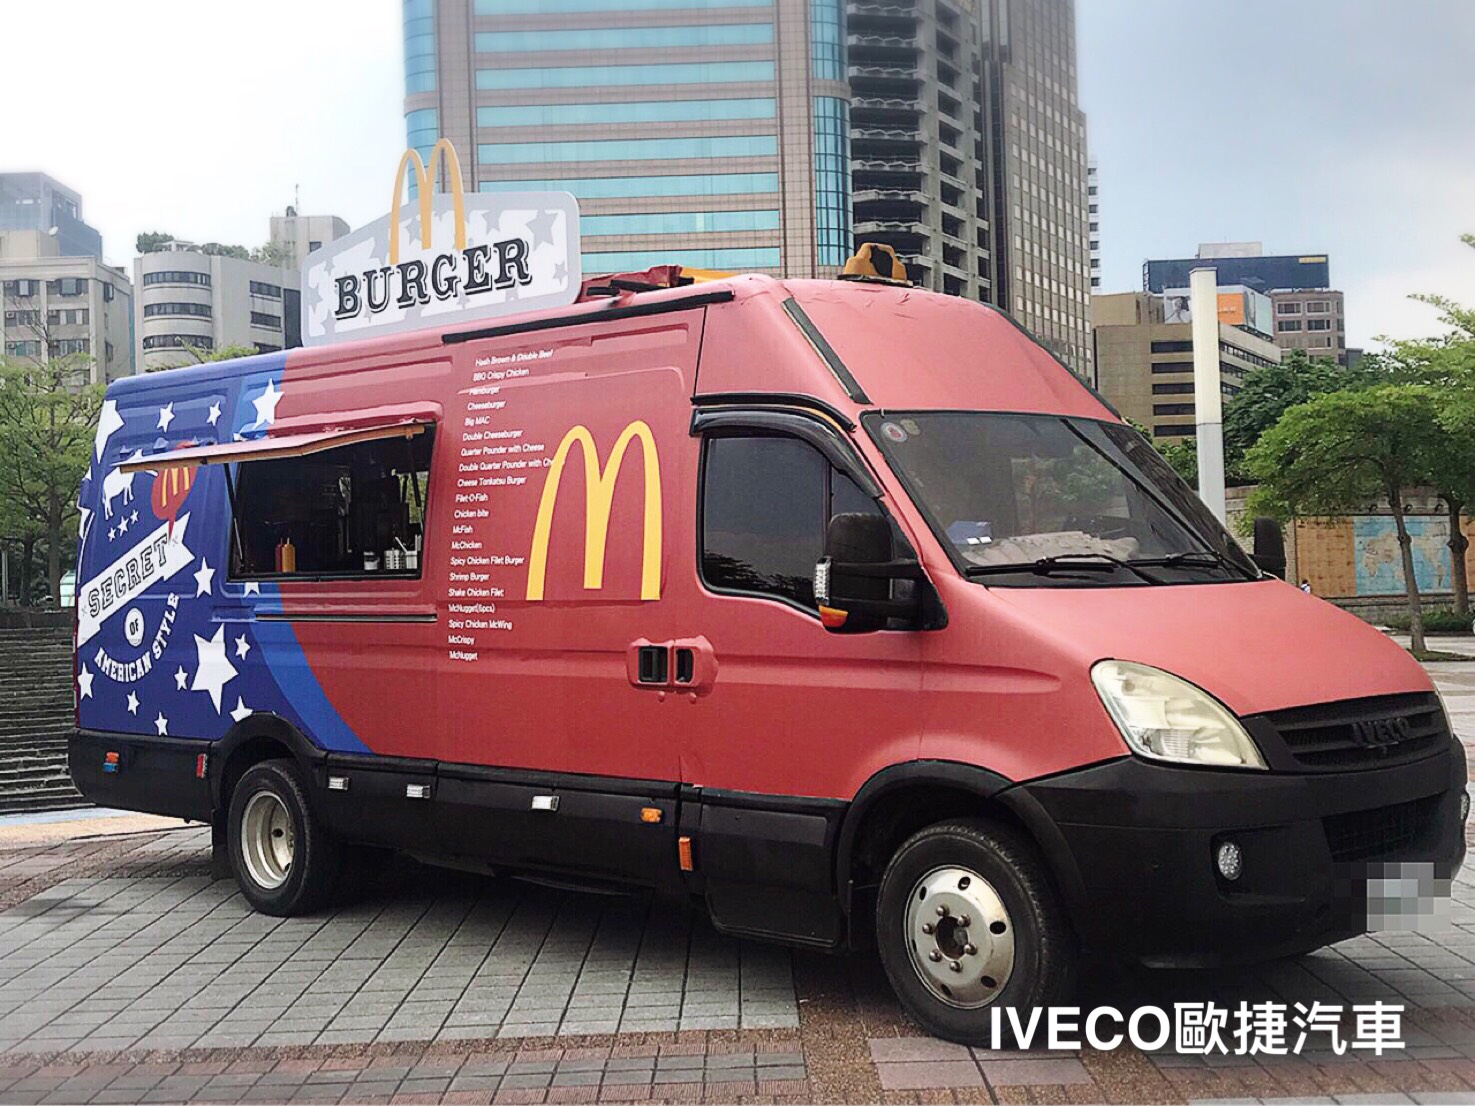 麥當勞餐車/IVECO行動餐車改裝